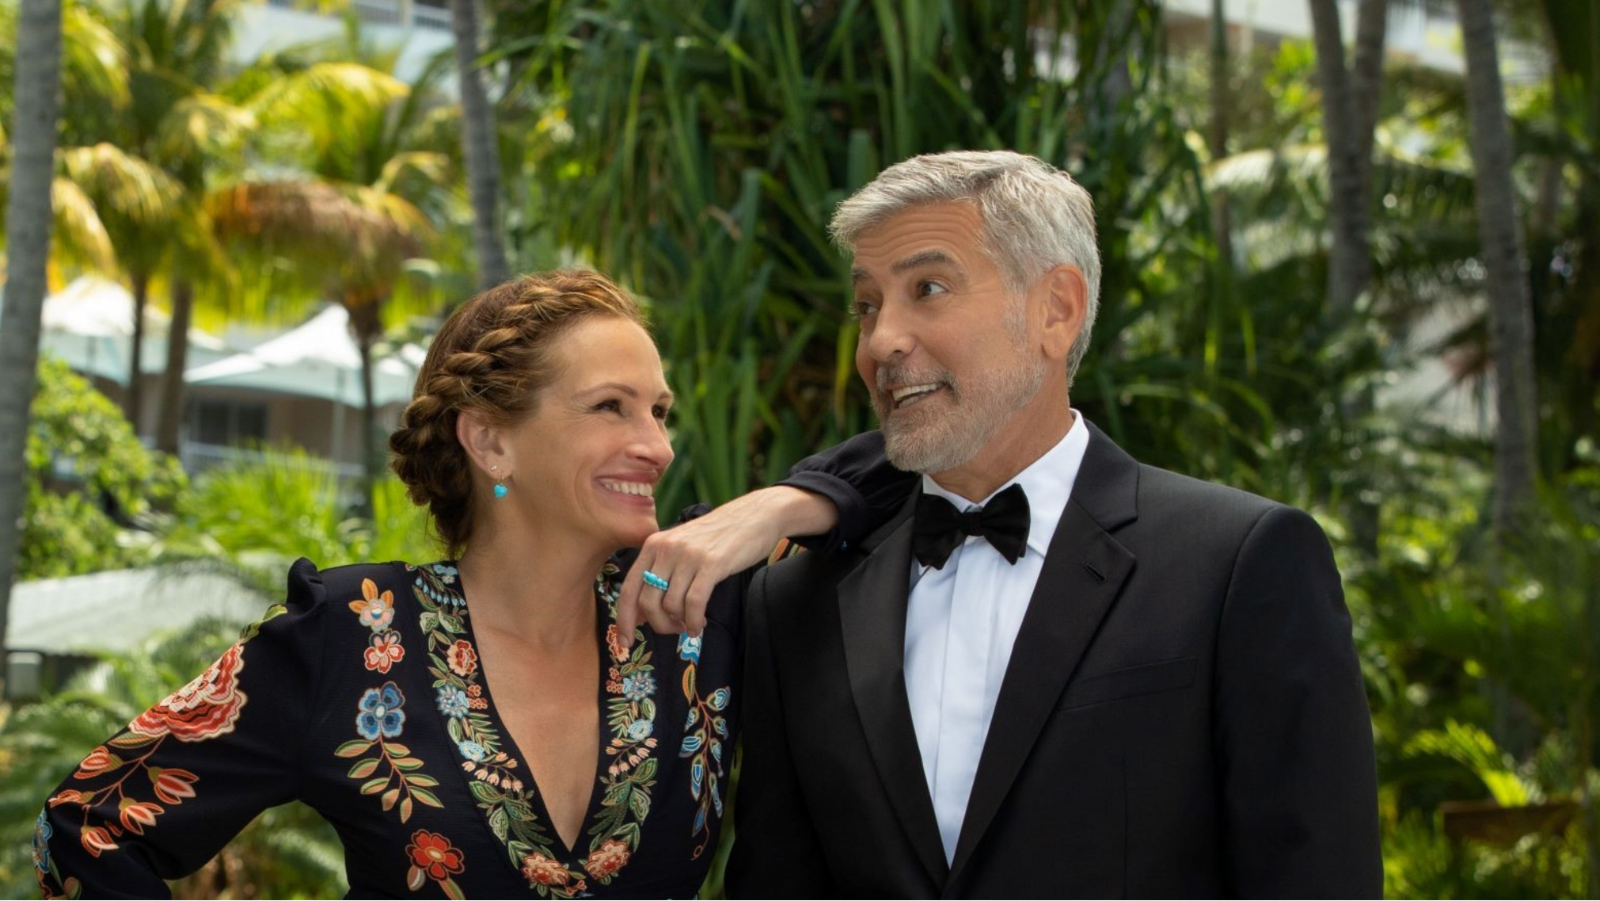 Jučer je u Cinestaru premijerno prikazan novi film “Karta za raj” s Juliom Roberts i Georgeom Clooneyem